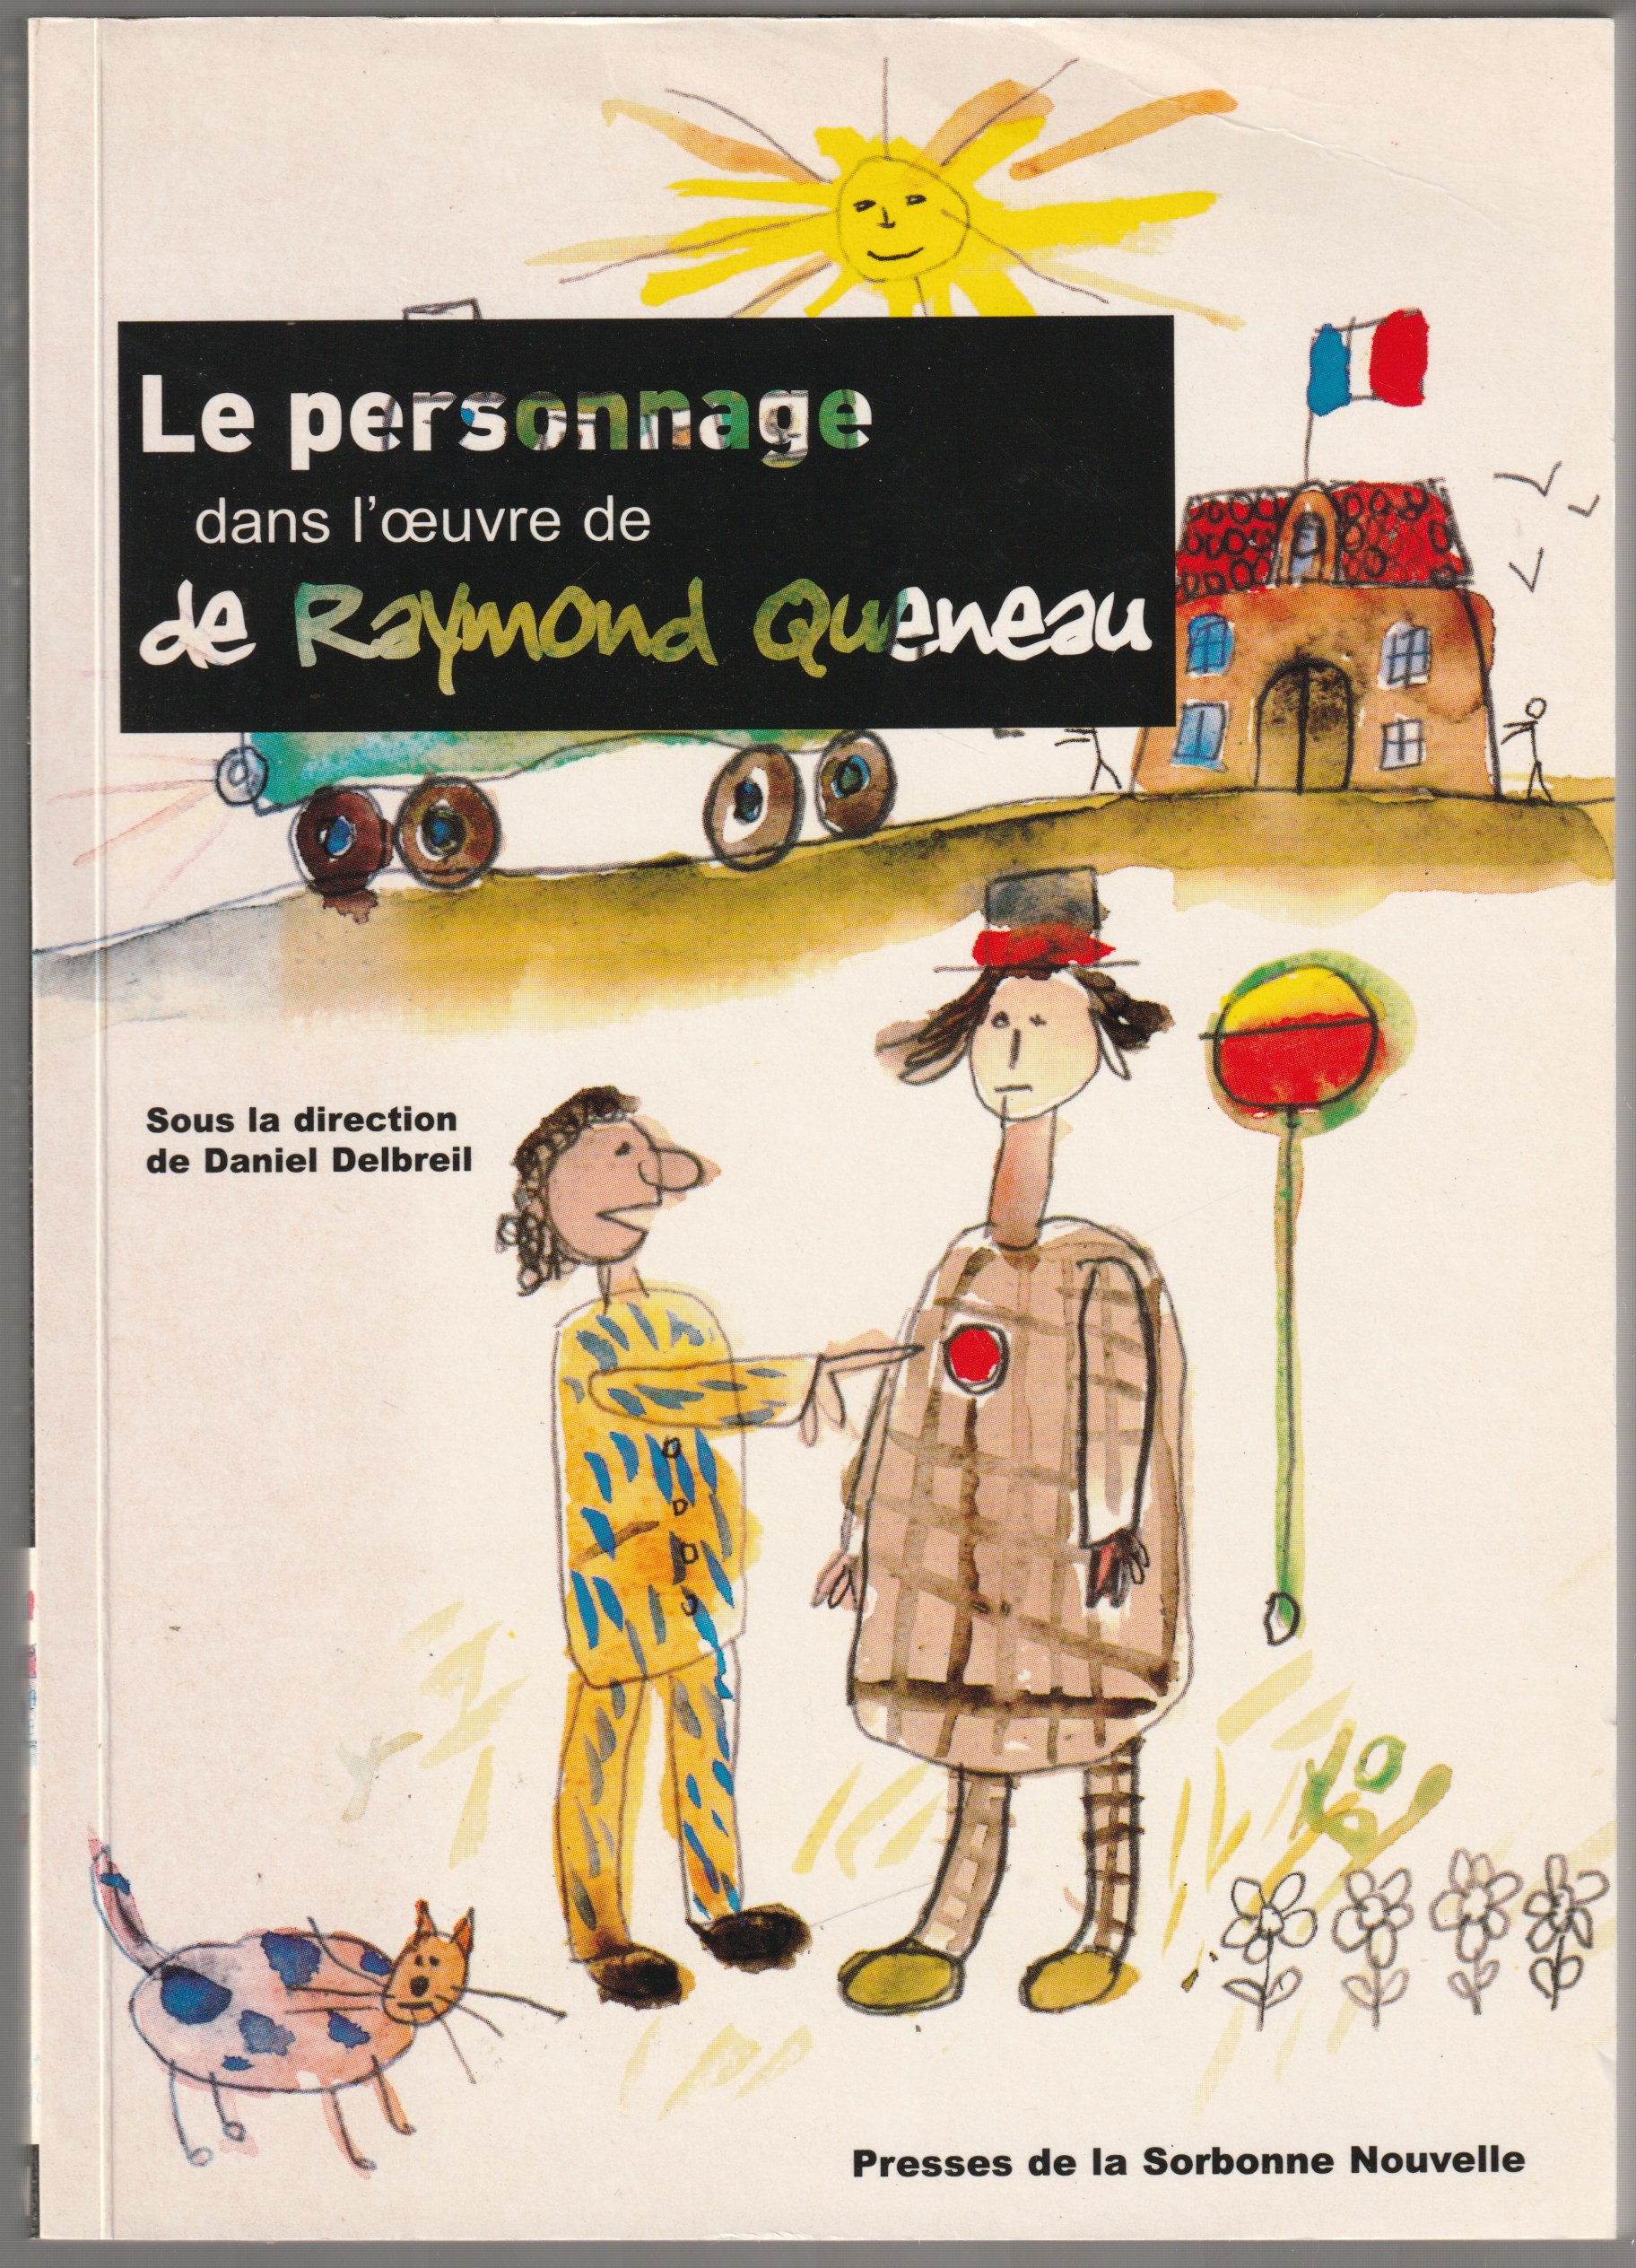 Le personnage dans l'oeuvre de Raymond Queneau.